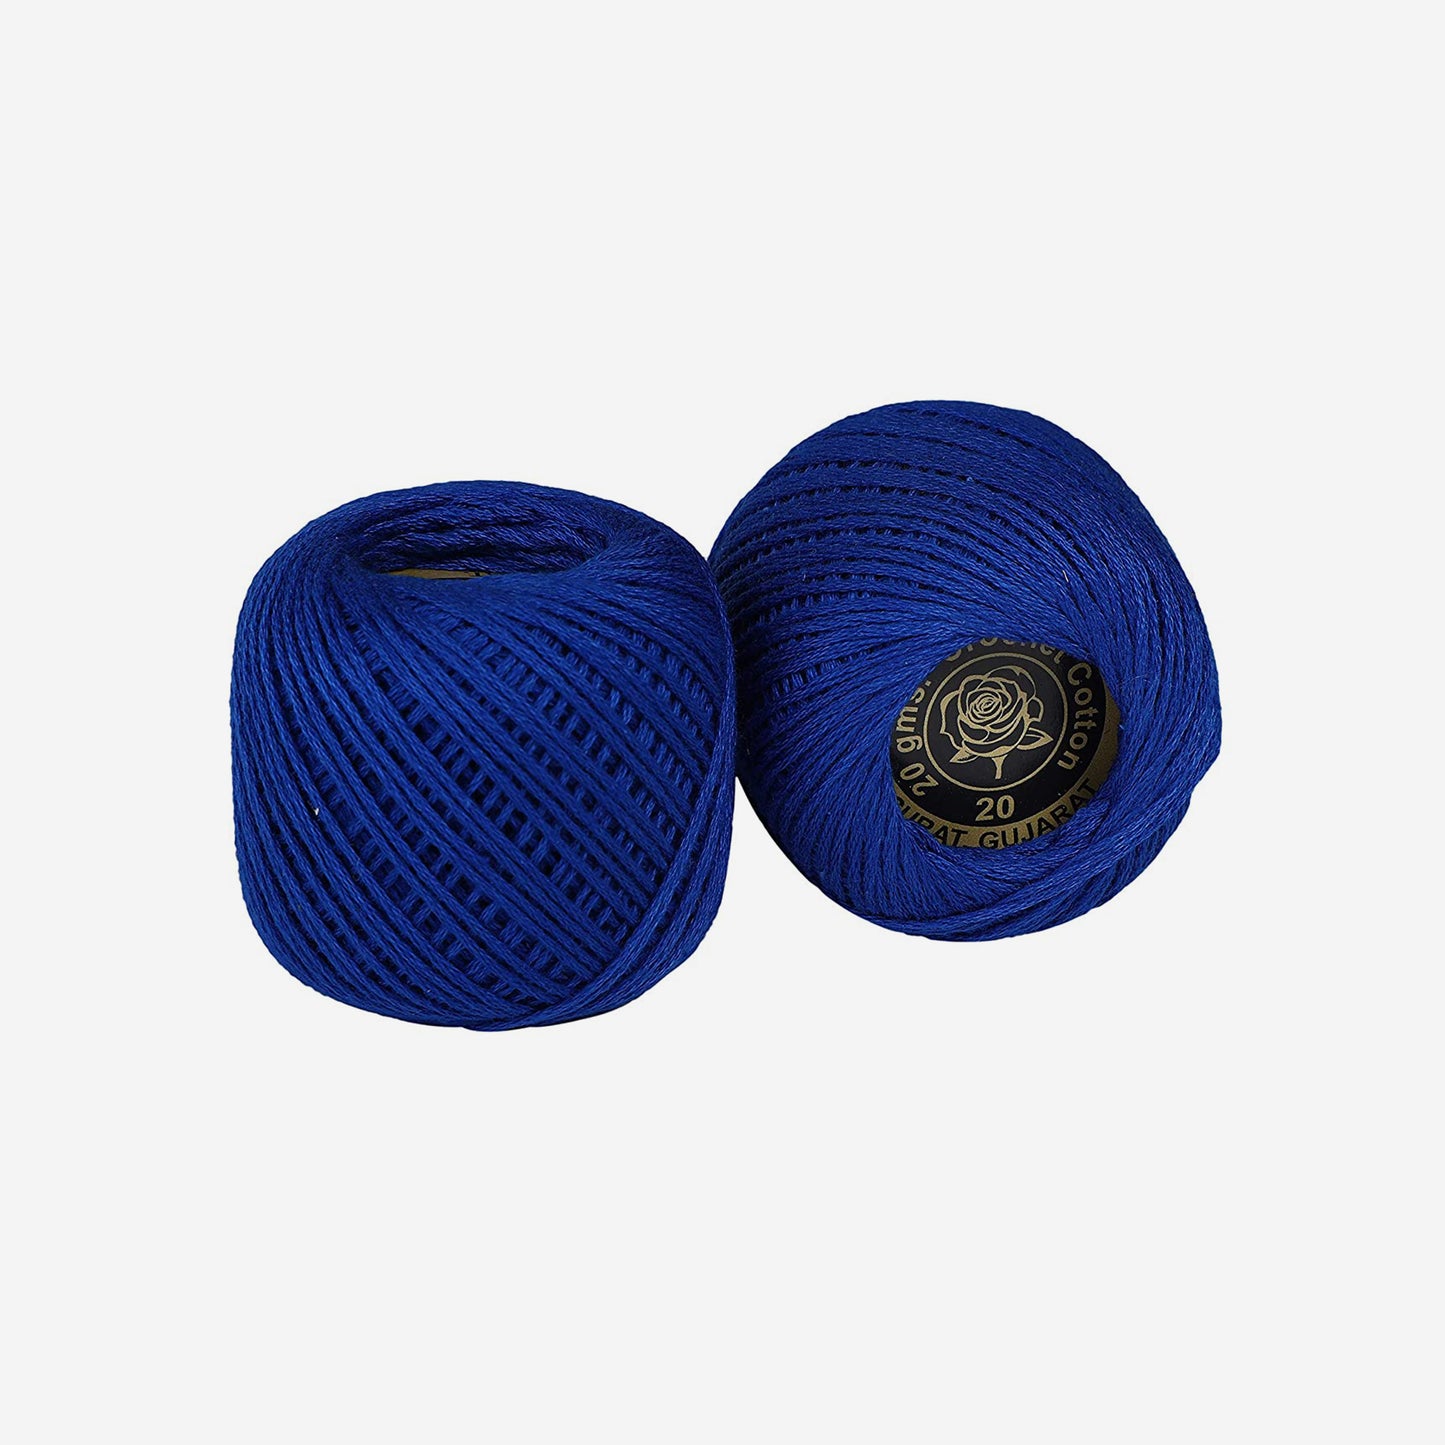 Hand-crochet hoops (Variation 1)